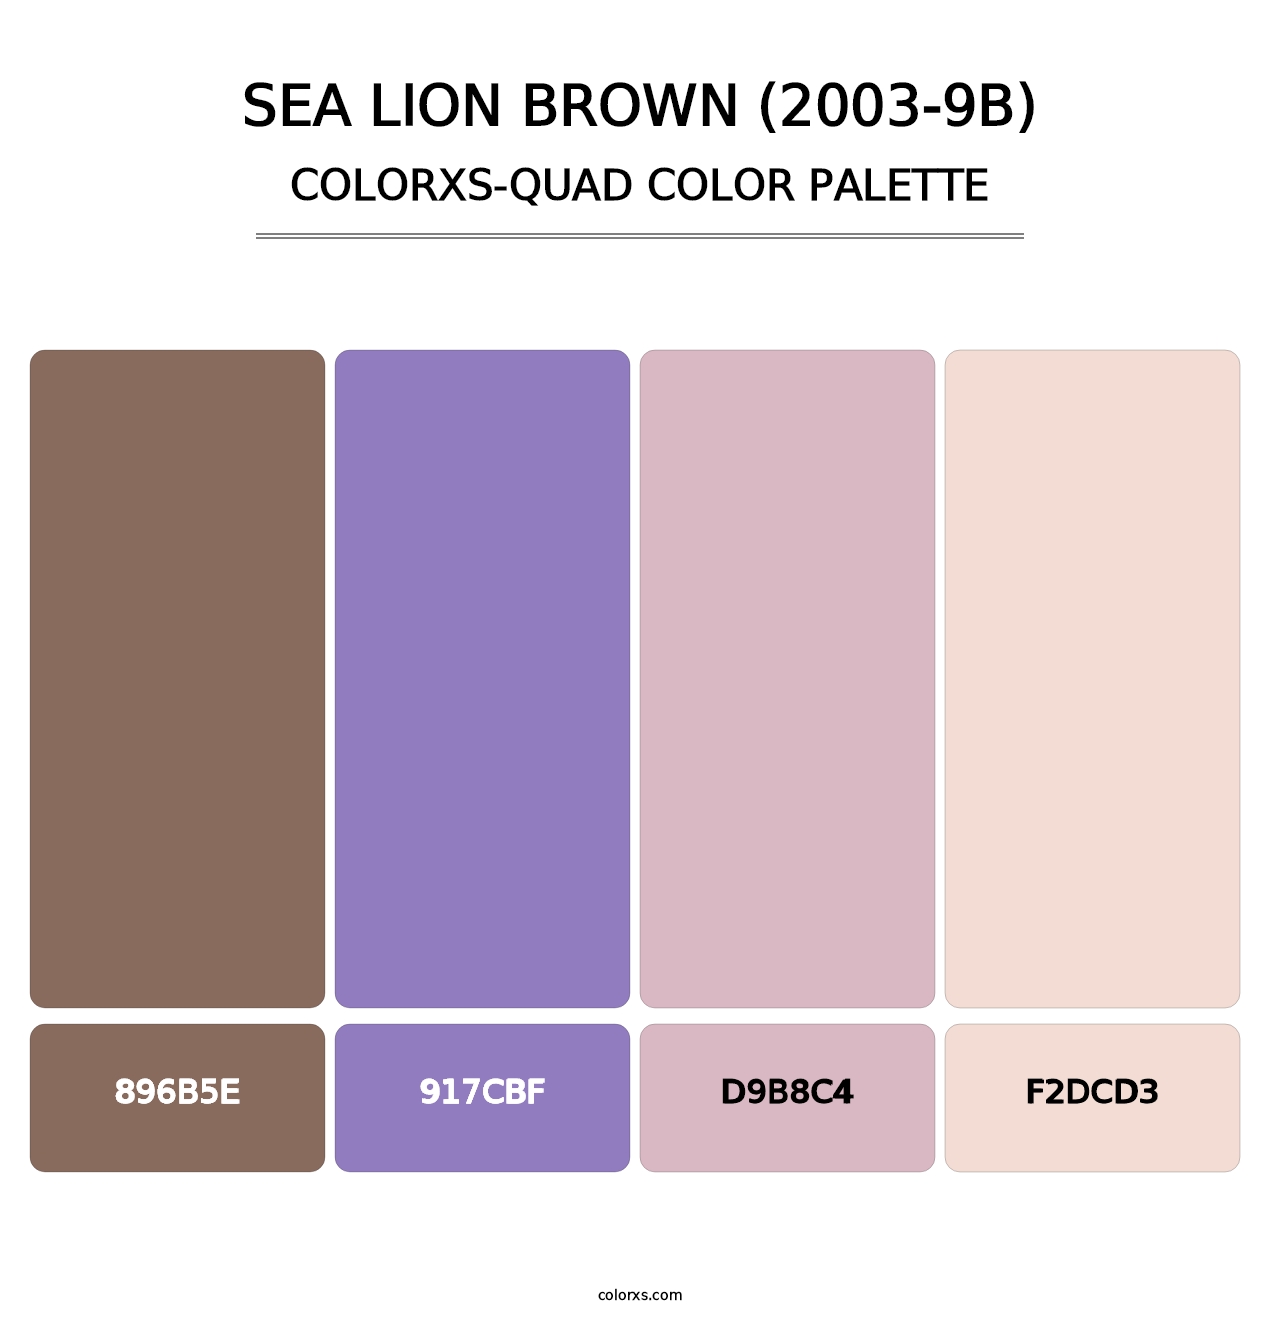 Sea Lion Brown (2003-9B) - Colorxs Quad Palette